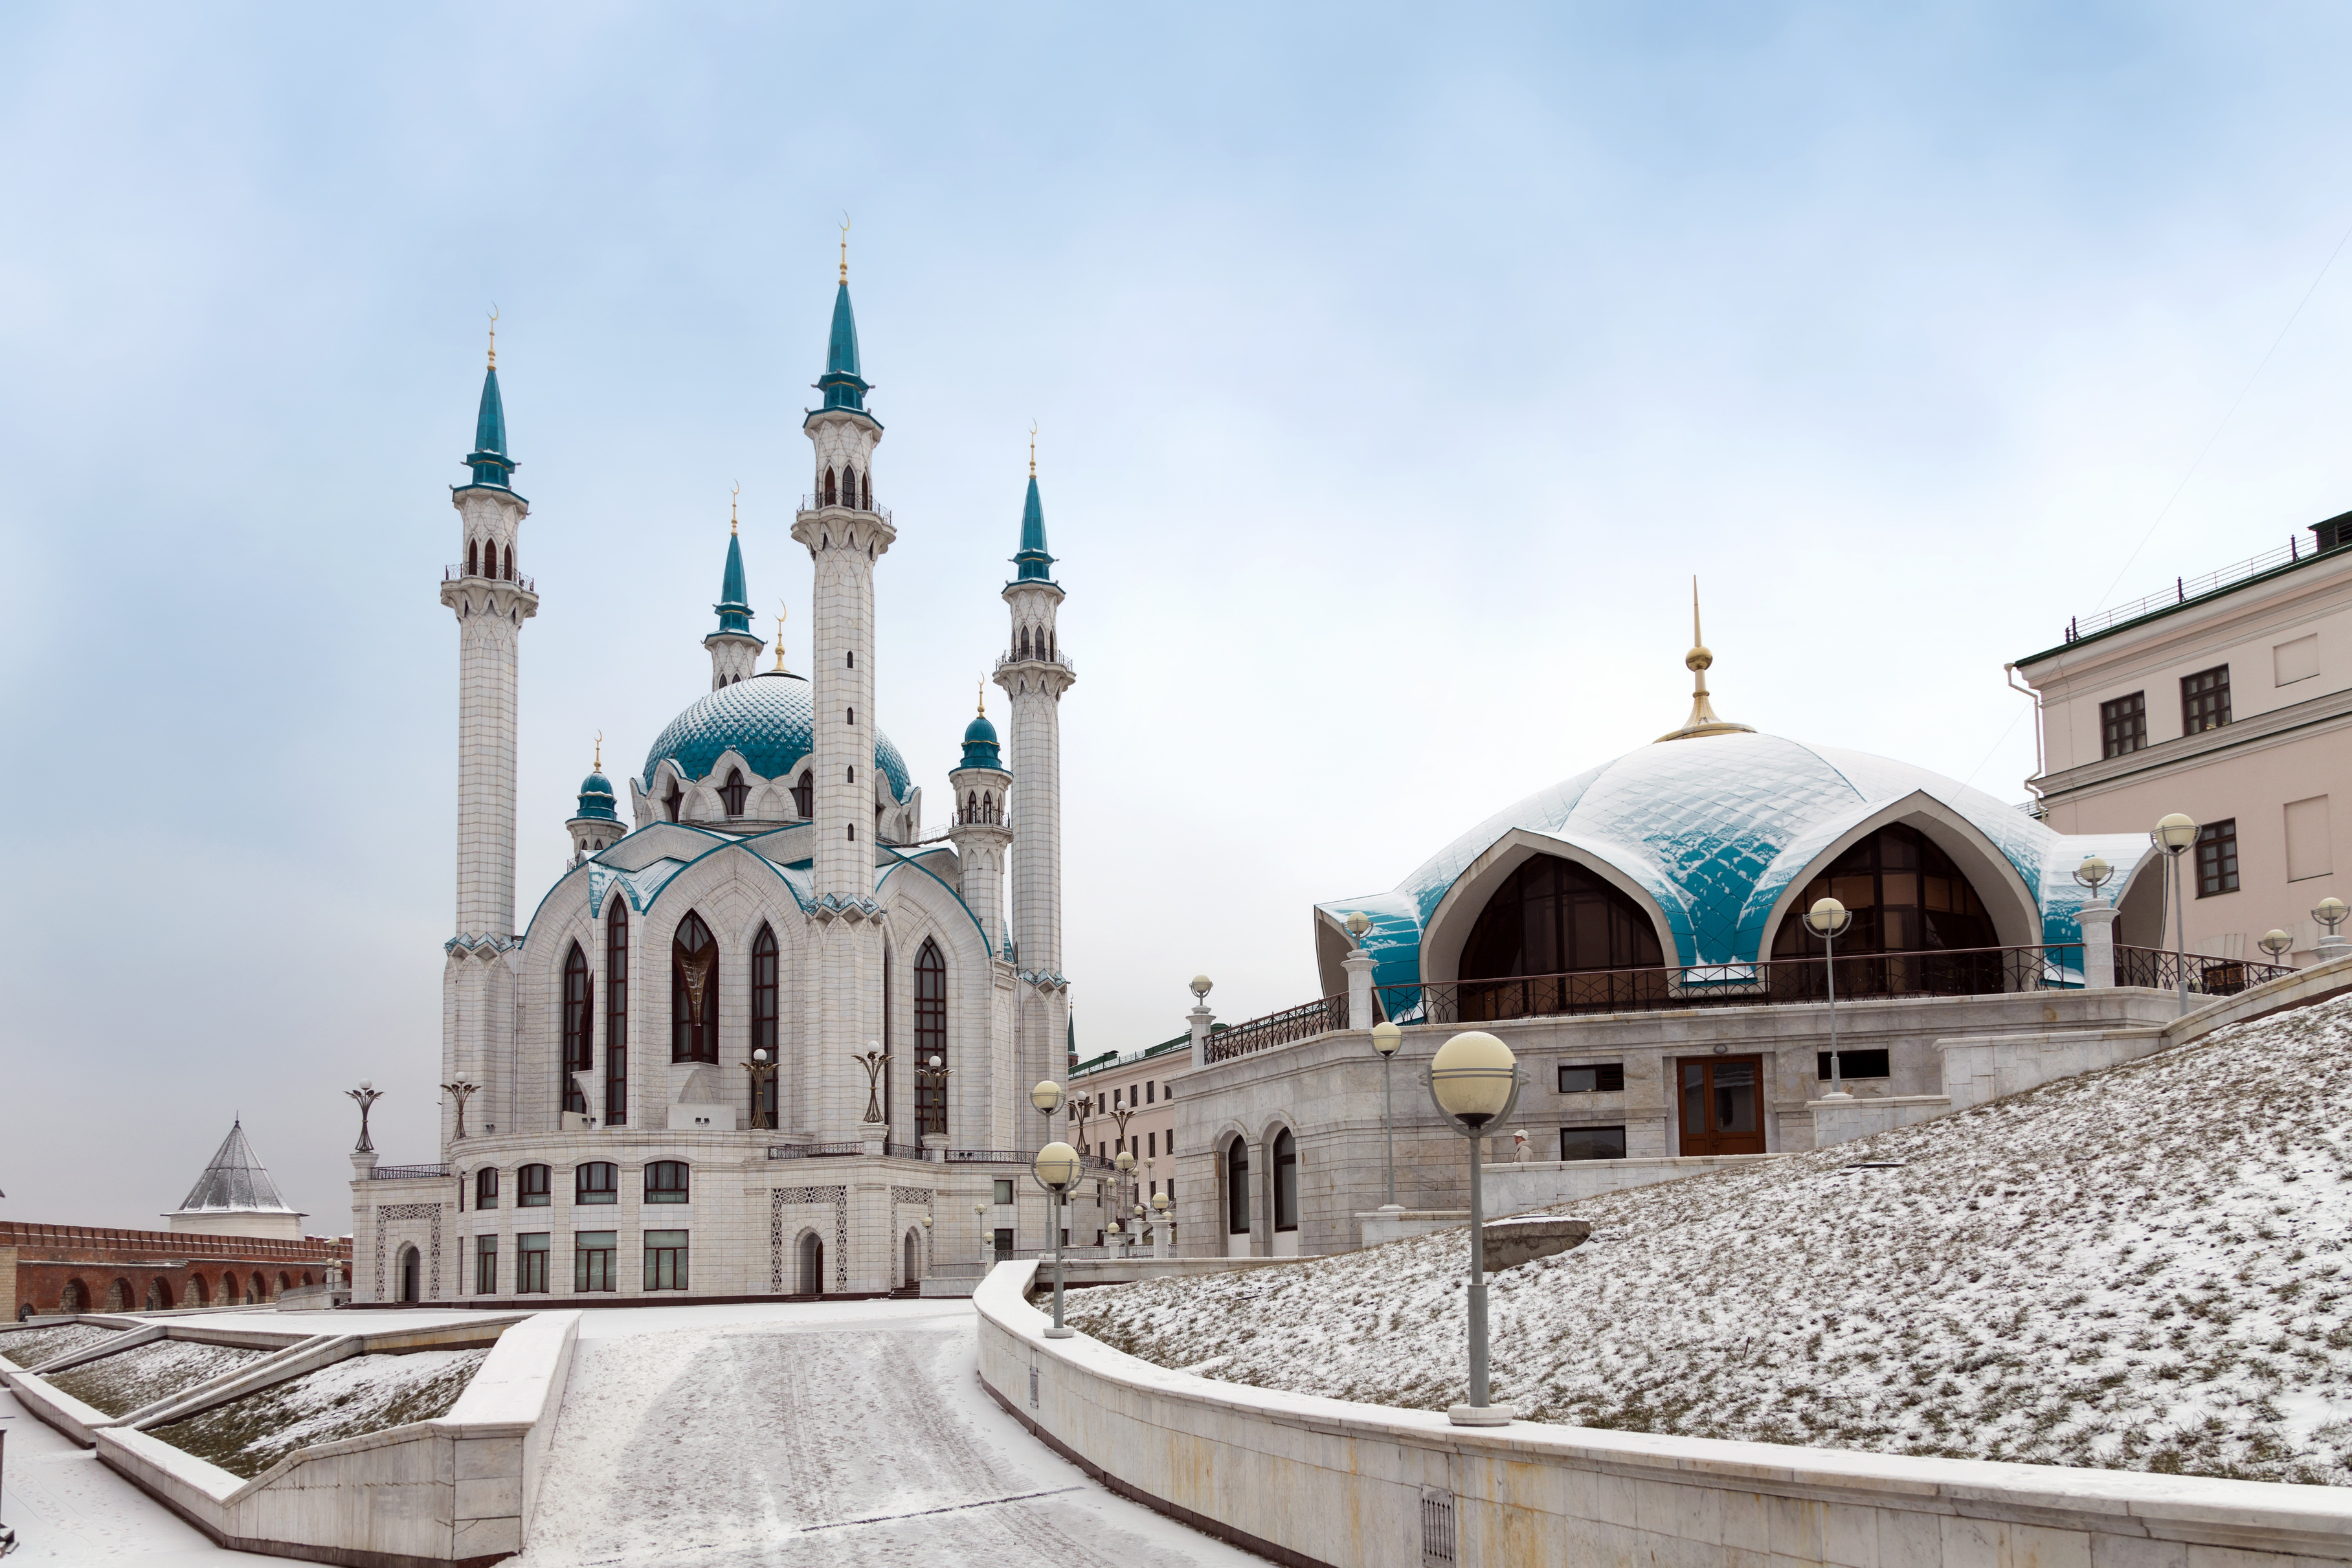 Masjid Kul Sharif di Kazan dibangun di lokasi kuil menara masjid legendaris, yang dihancurkan oleh Ivan Grozny selama kampanye militernya pada 1547 – 1552. Masjid dengan enam menara setinggi 55 meter ini merupakan bagian dari Kompleks Arsitektur dan Sejarah Kremlin Kazan, yang dinobatkan sebagai Situs Warisan Dunia pada 2000.